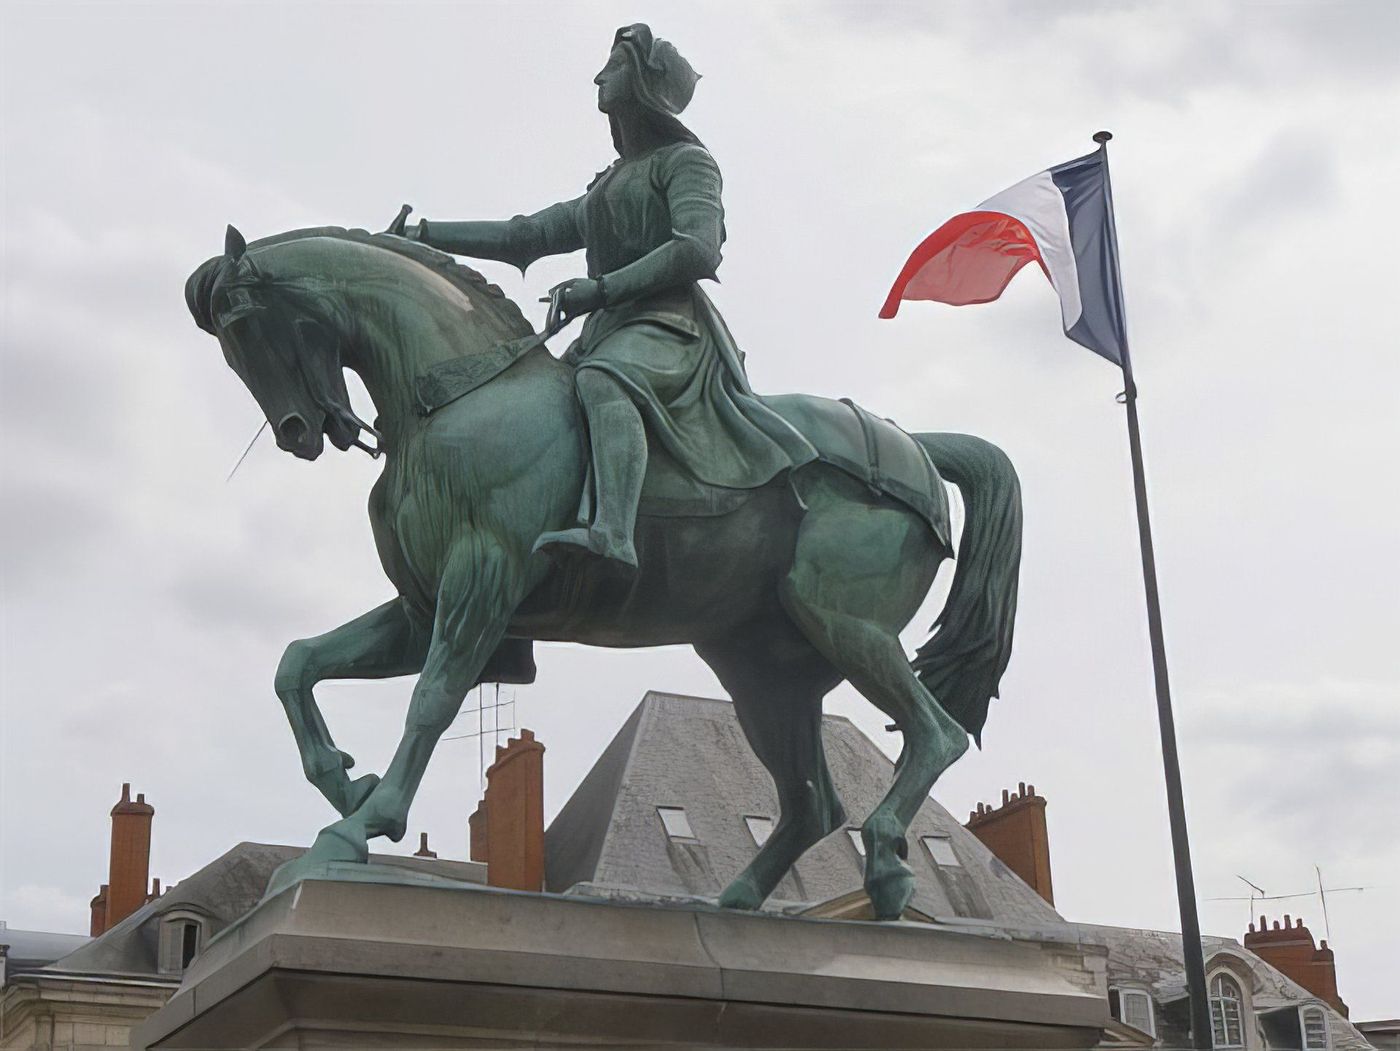 Jeanne d'Arc "La pucelle d'Orleans"